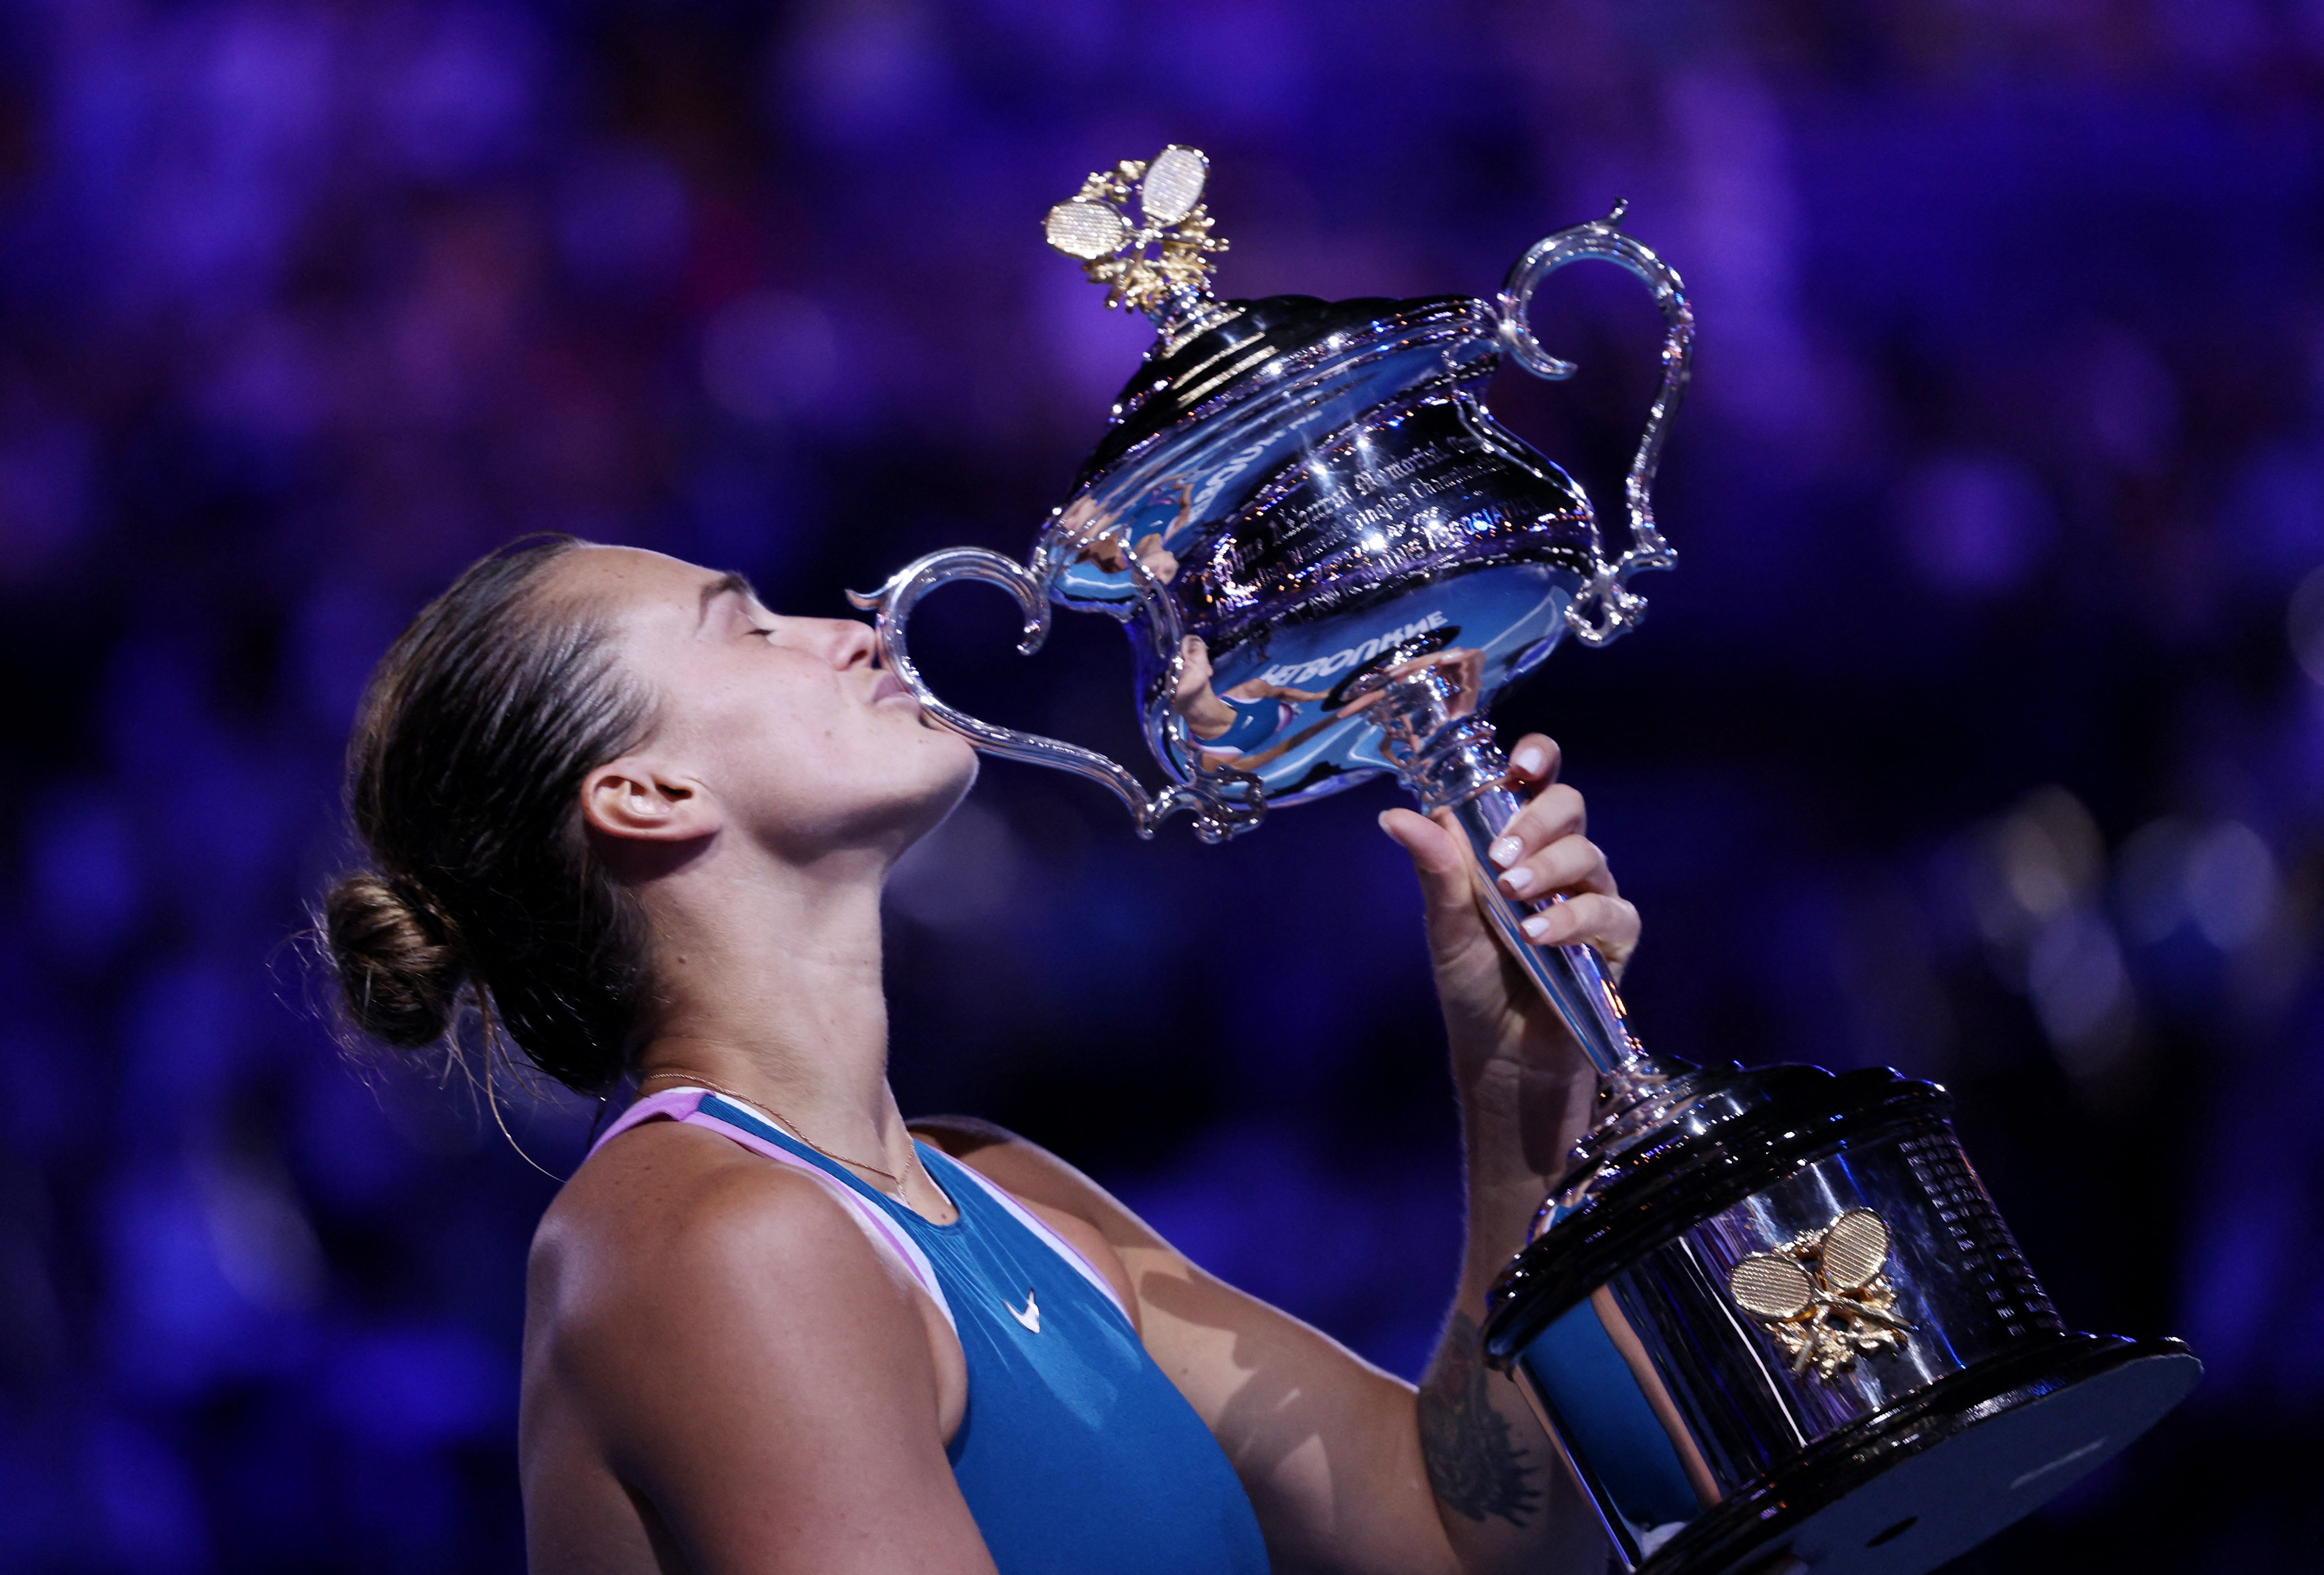 Aryna Sabalenka remontó en la final del Australian Open y conquistó su primer título de Grand Slam